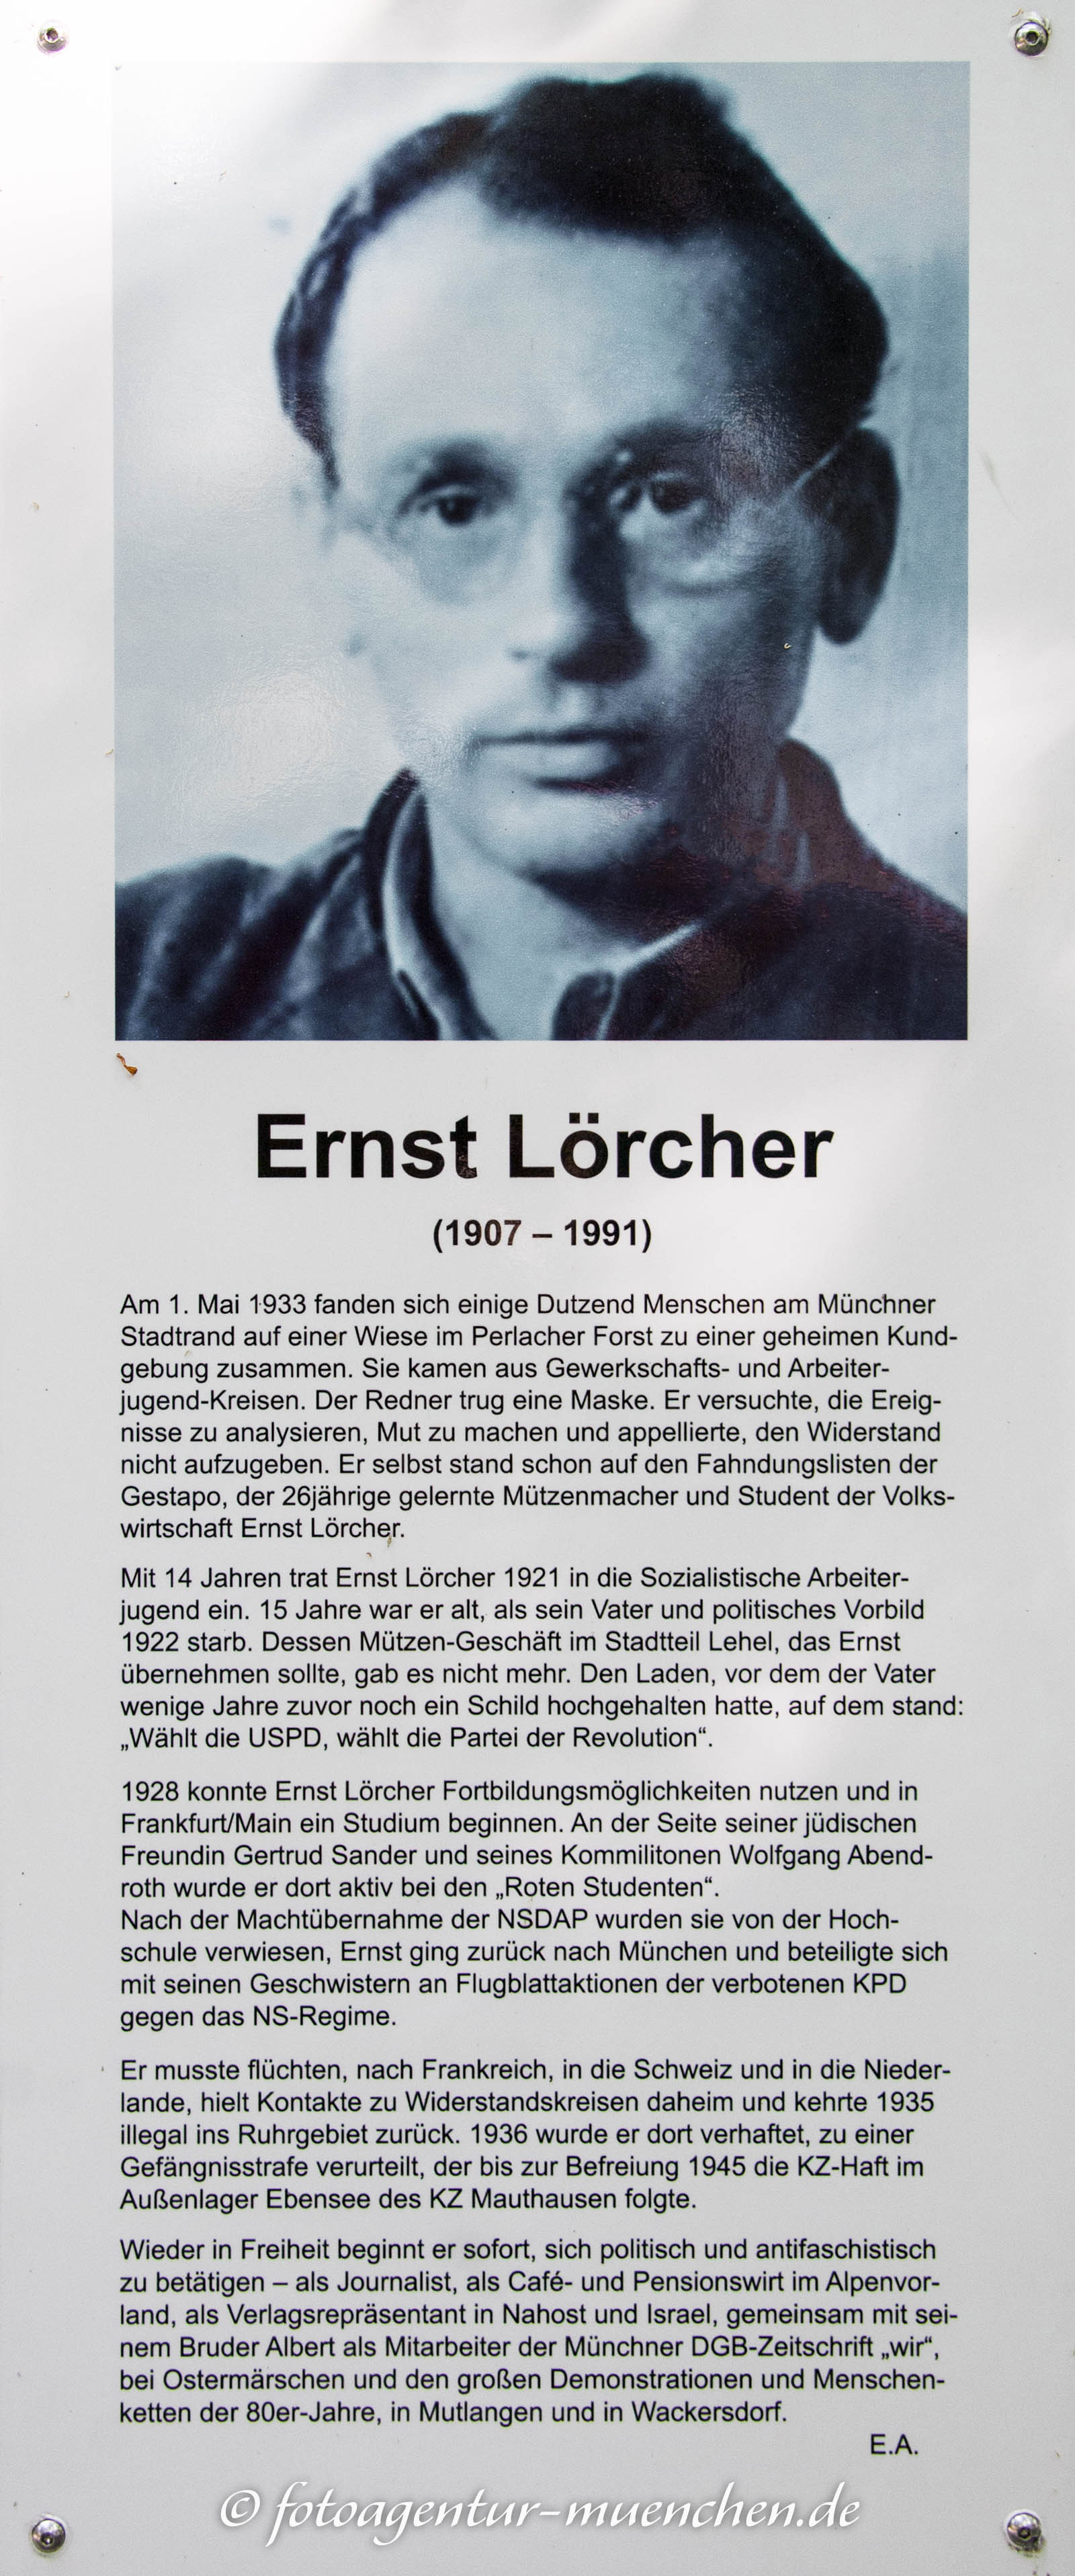 Gedenkstele für Ernst Lörcher